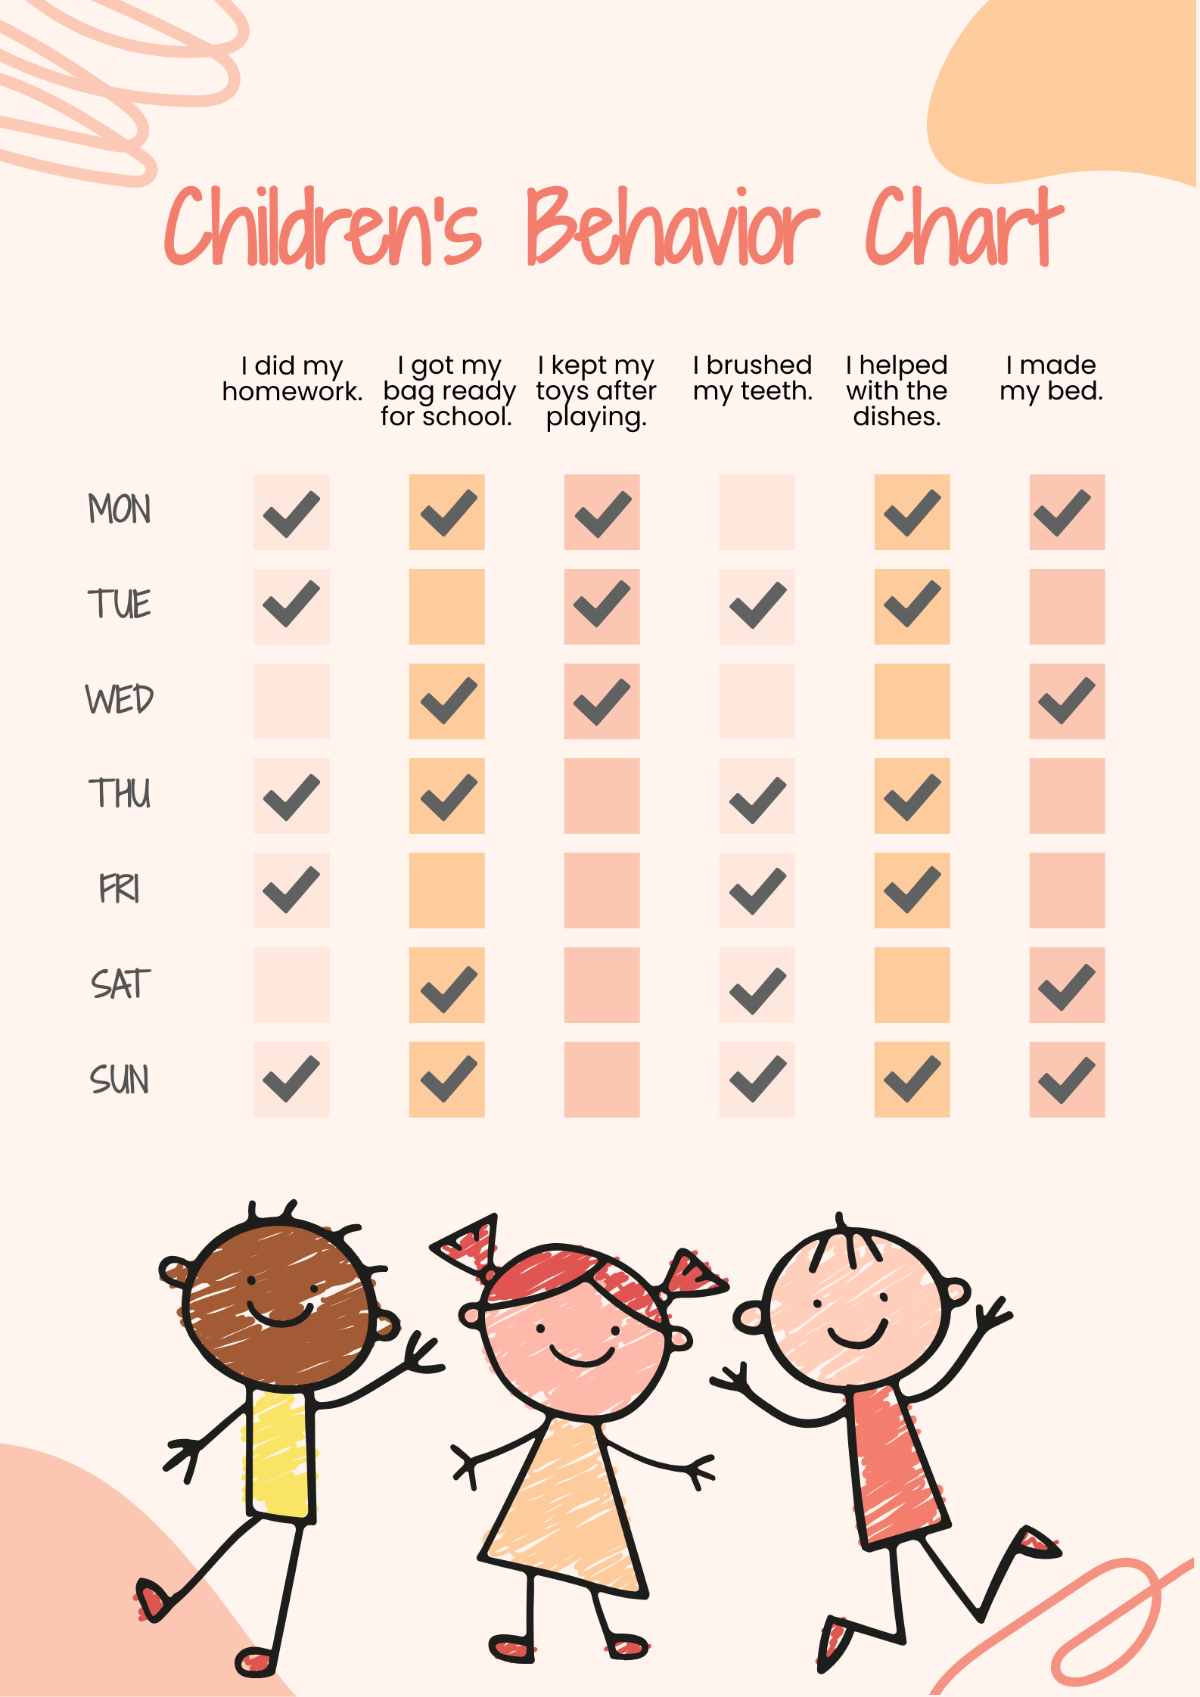 Children's Behavior Chart